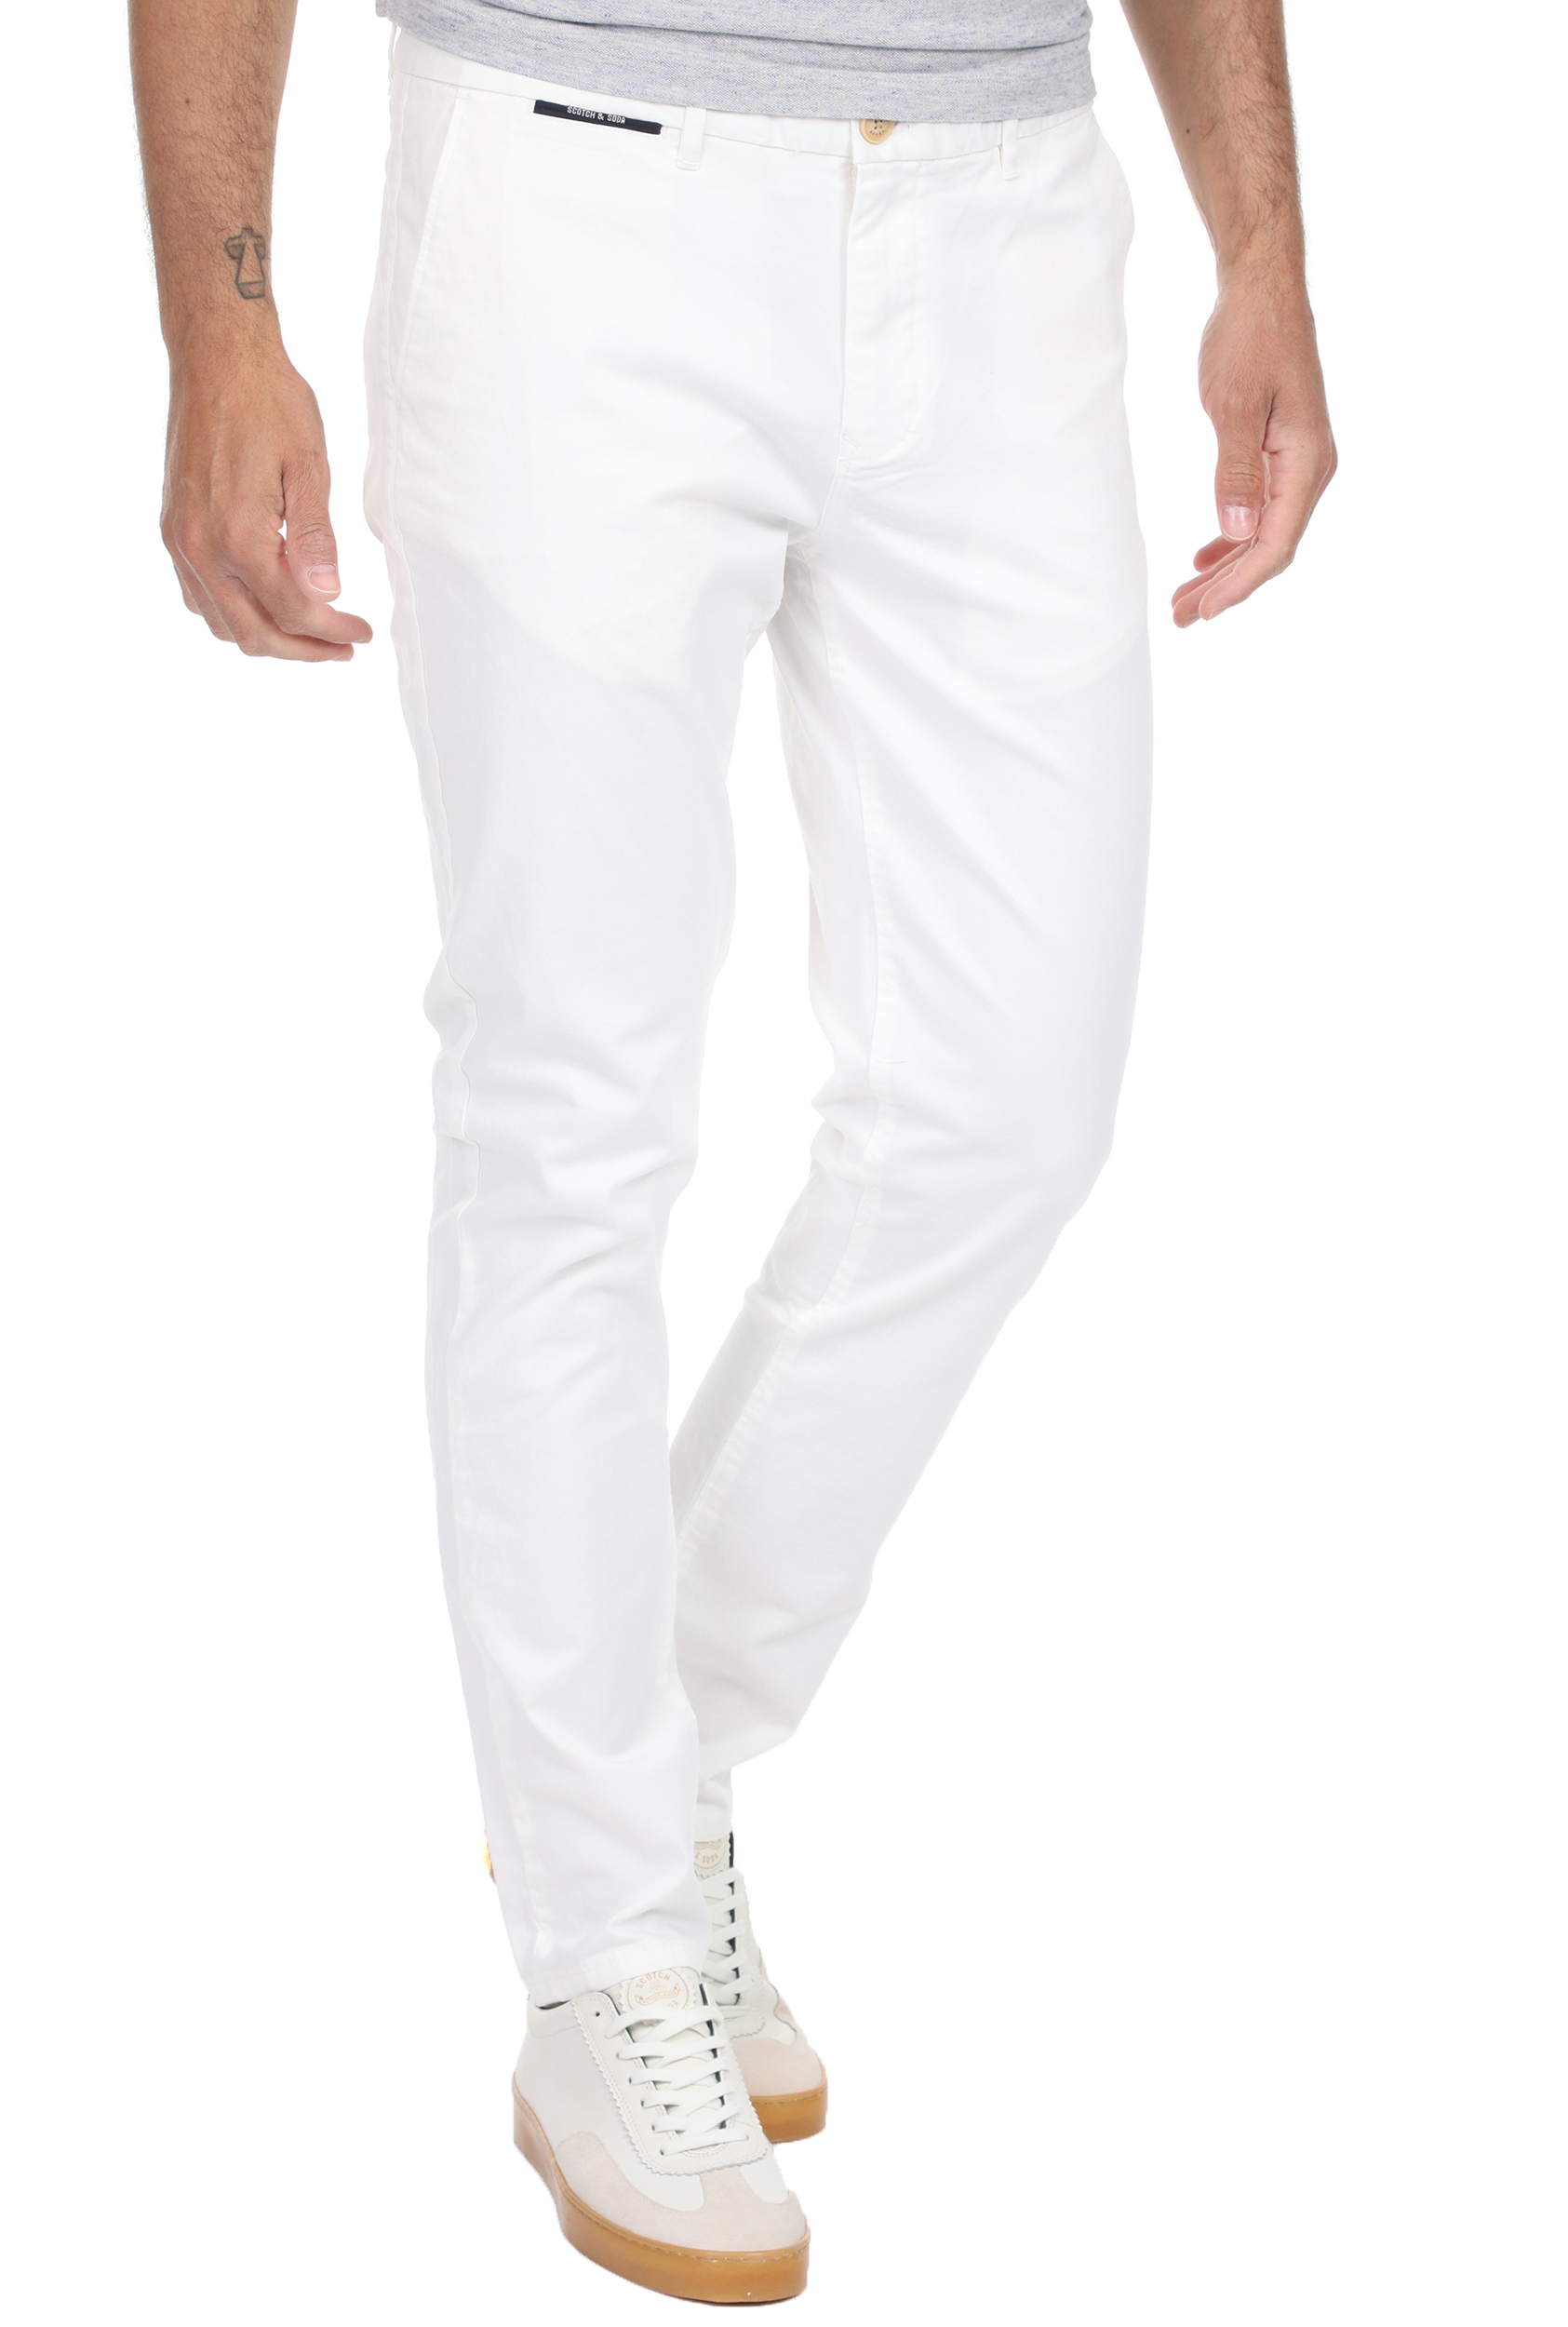 Ανδρικά/Ρούχα/Παντελόνια/Chinos SCOTCH & SODA - Ανδρικό chino παντελόνι SCOTCH & SODA MOTT λευκό